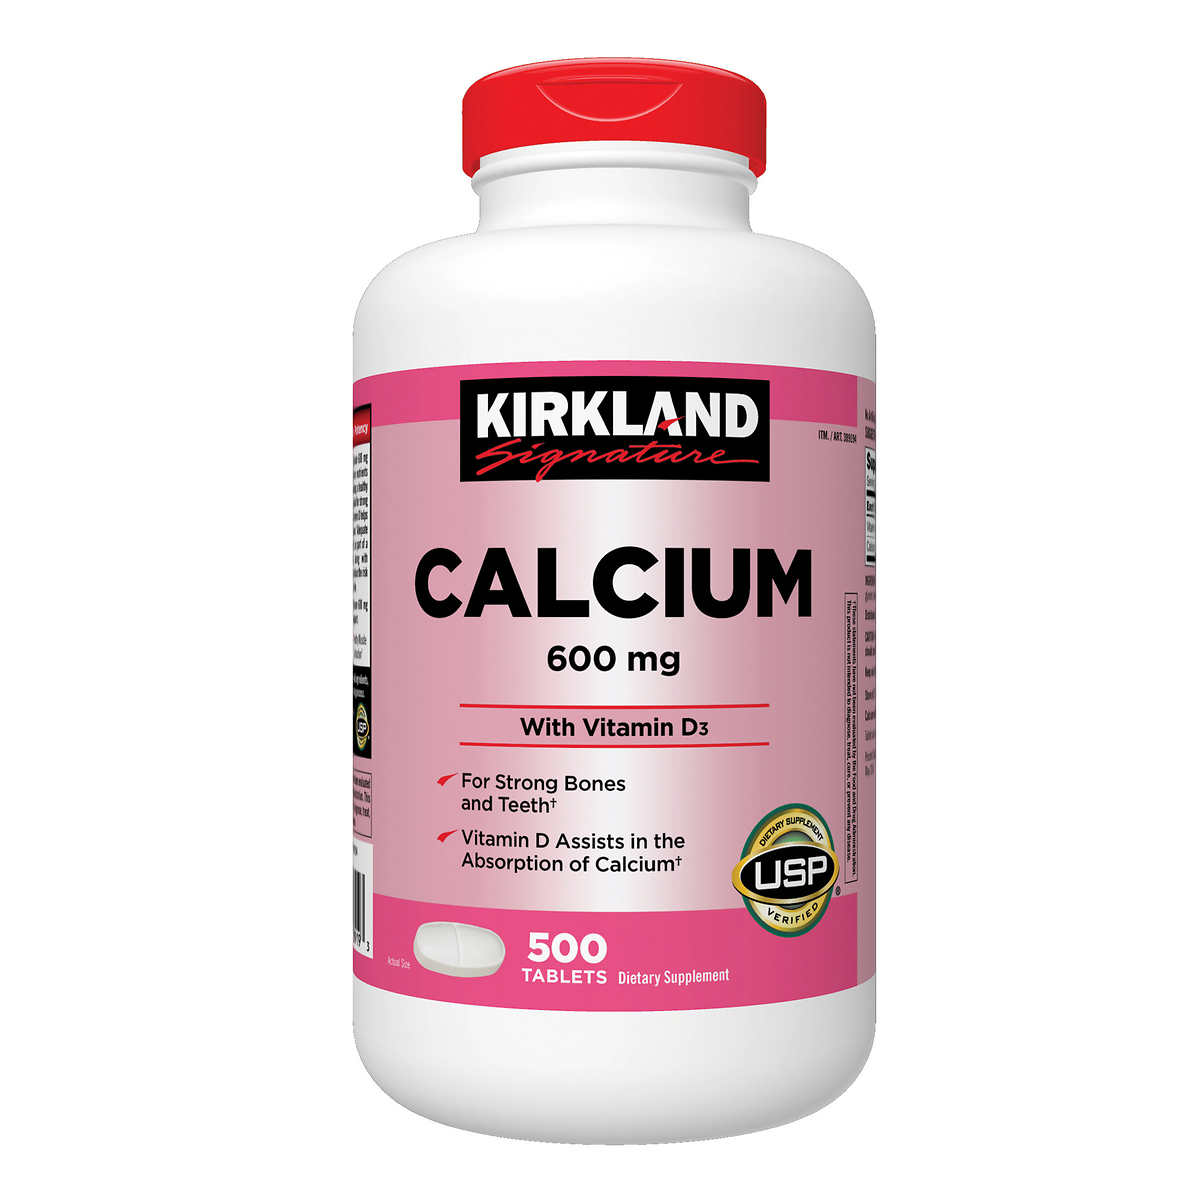 Grijpen Buitenlander Perforeren Kirkland Signature Calcium 600 mg. with Vitamin D3, 500 Tablets | Costco